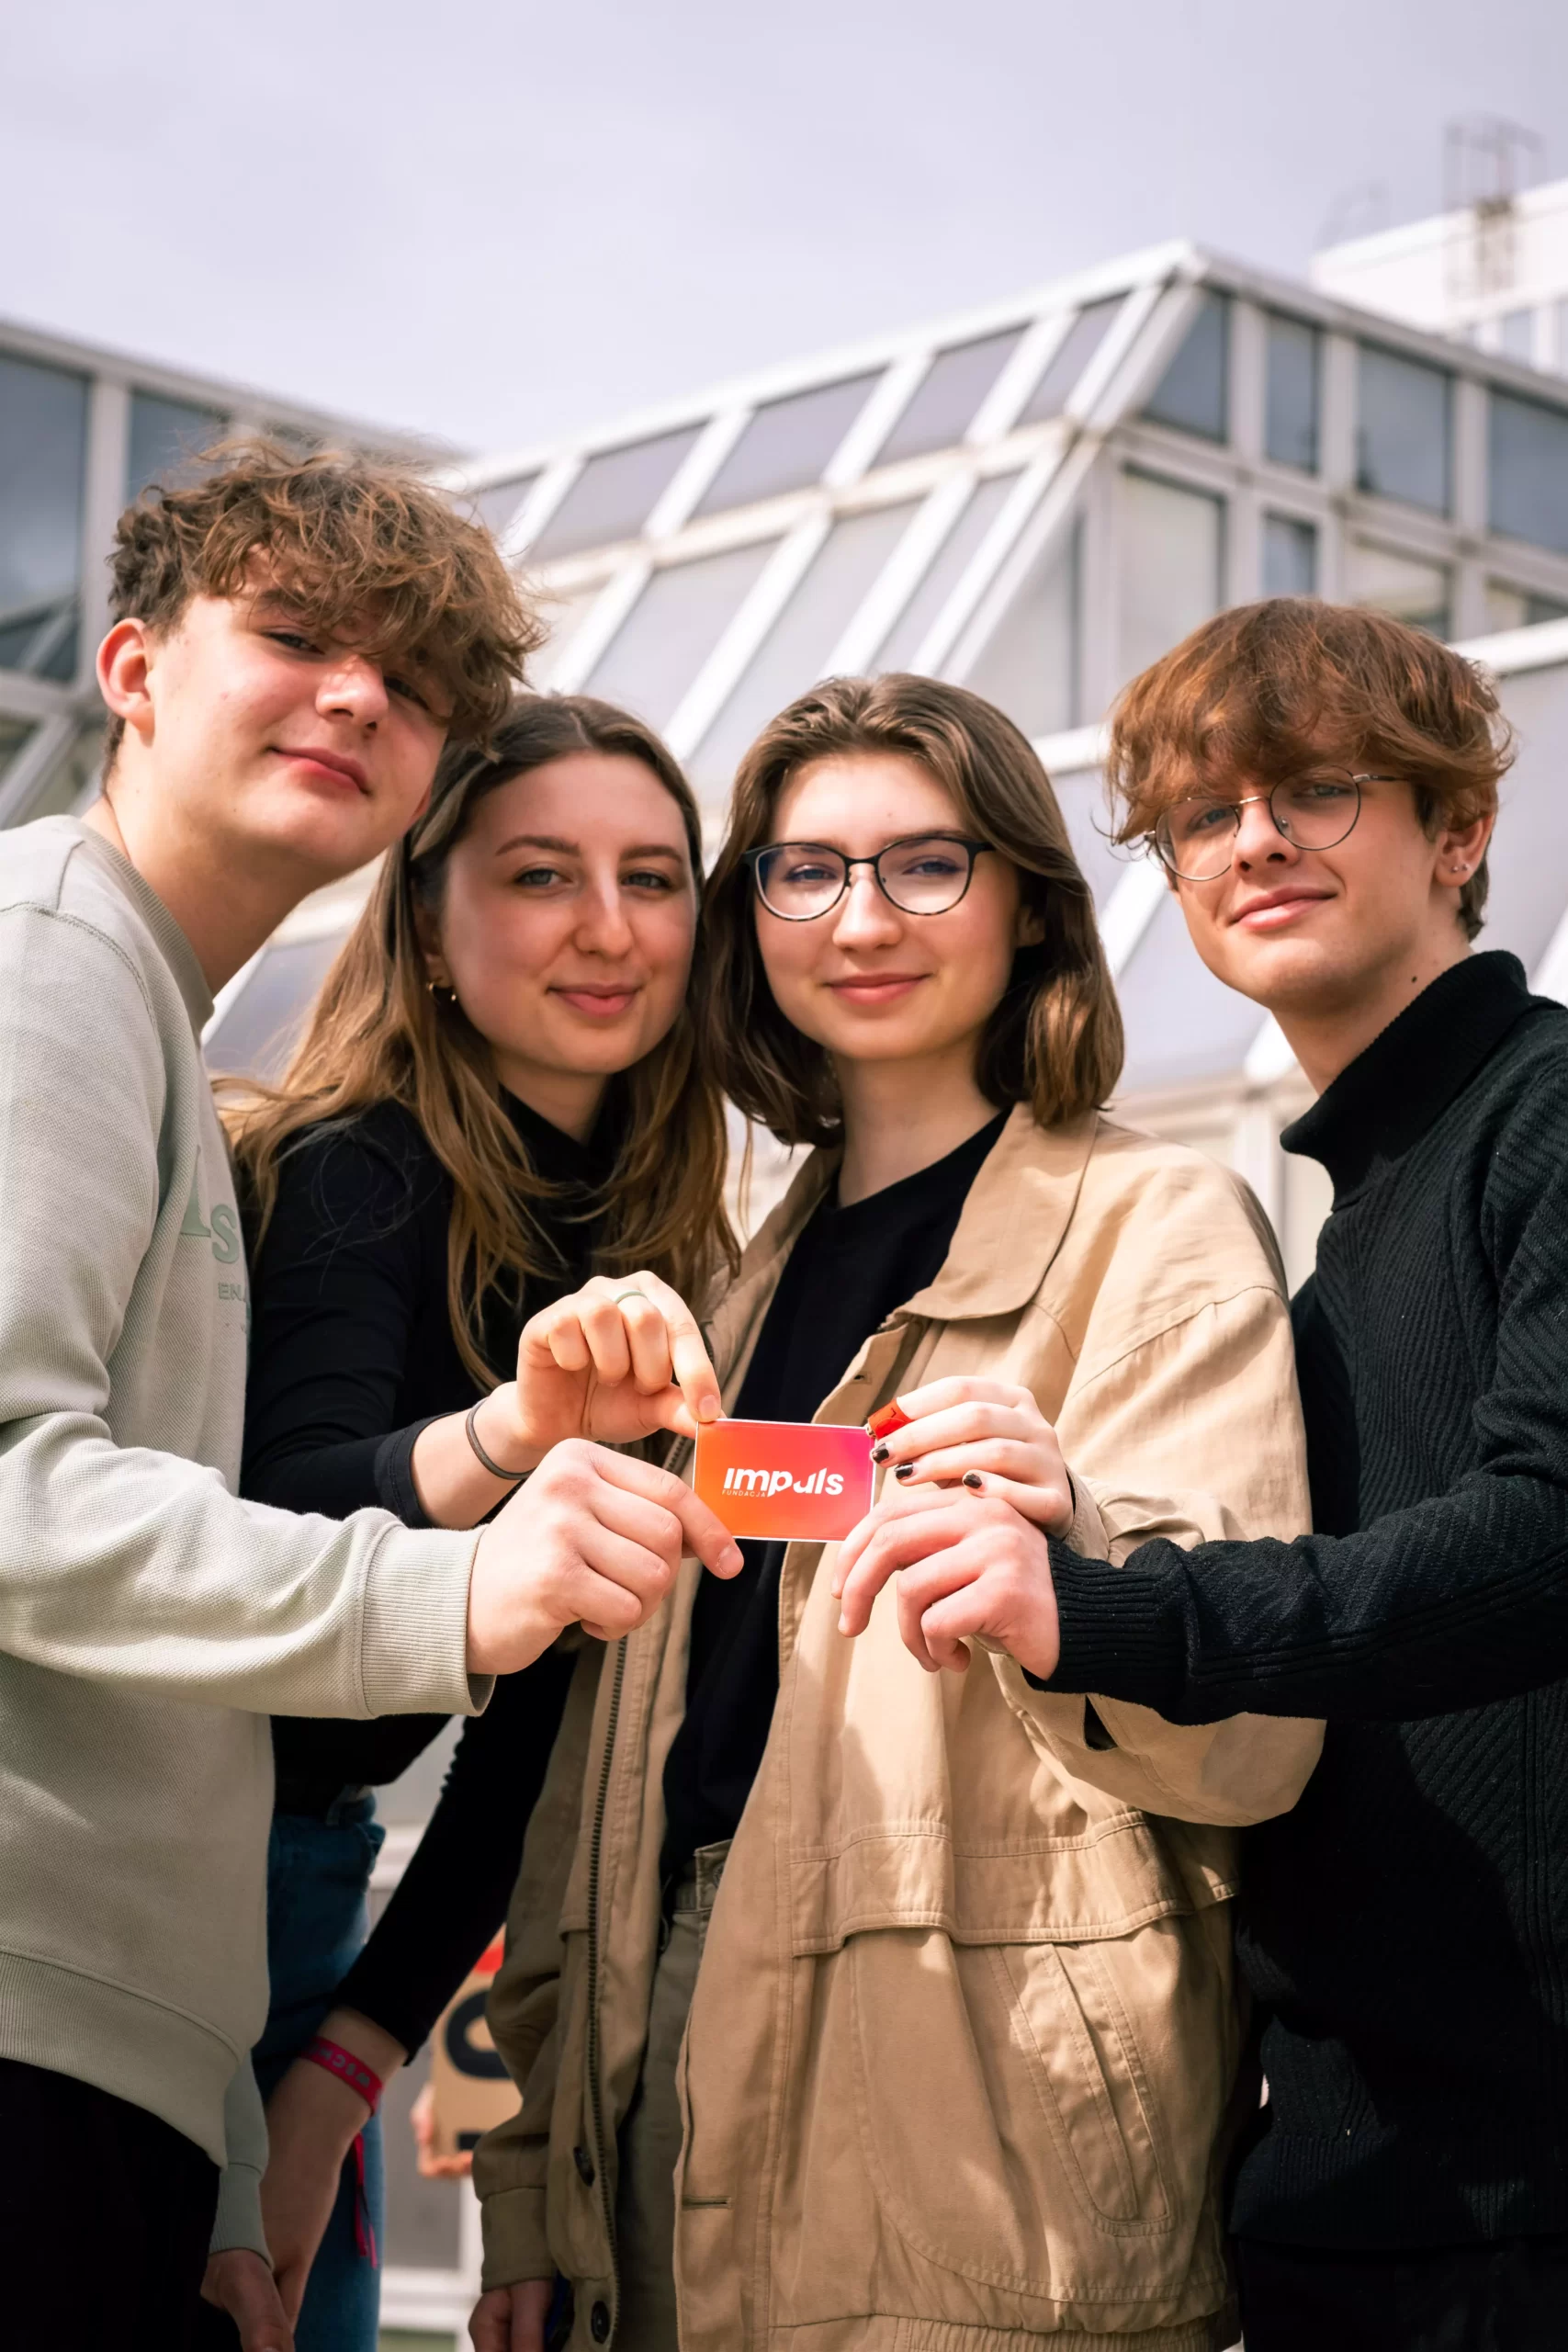 cztery osoby trzymają wizytówkę z napisem impuls